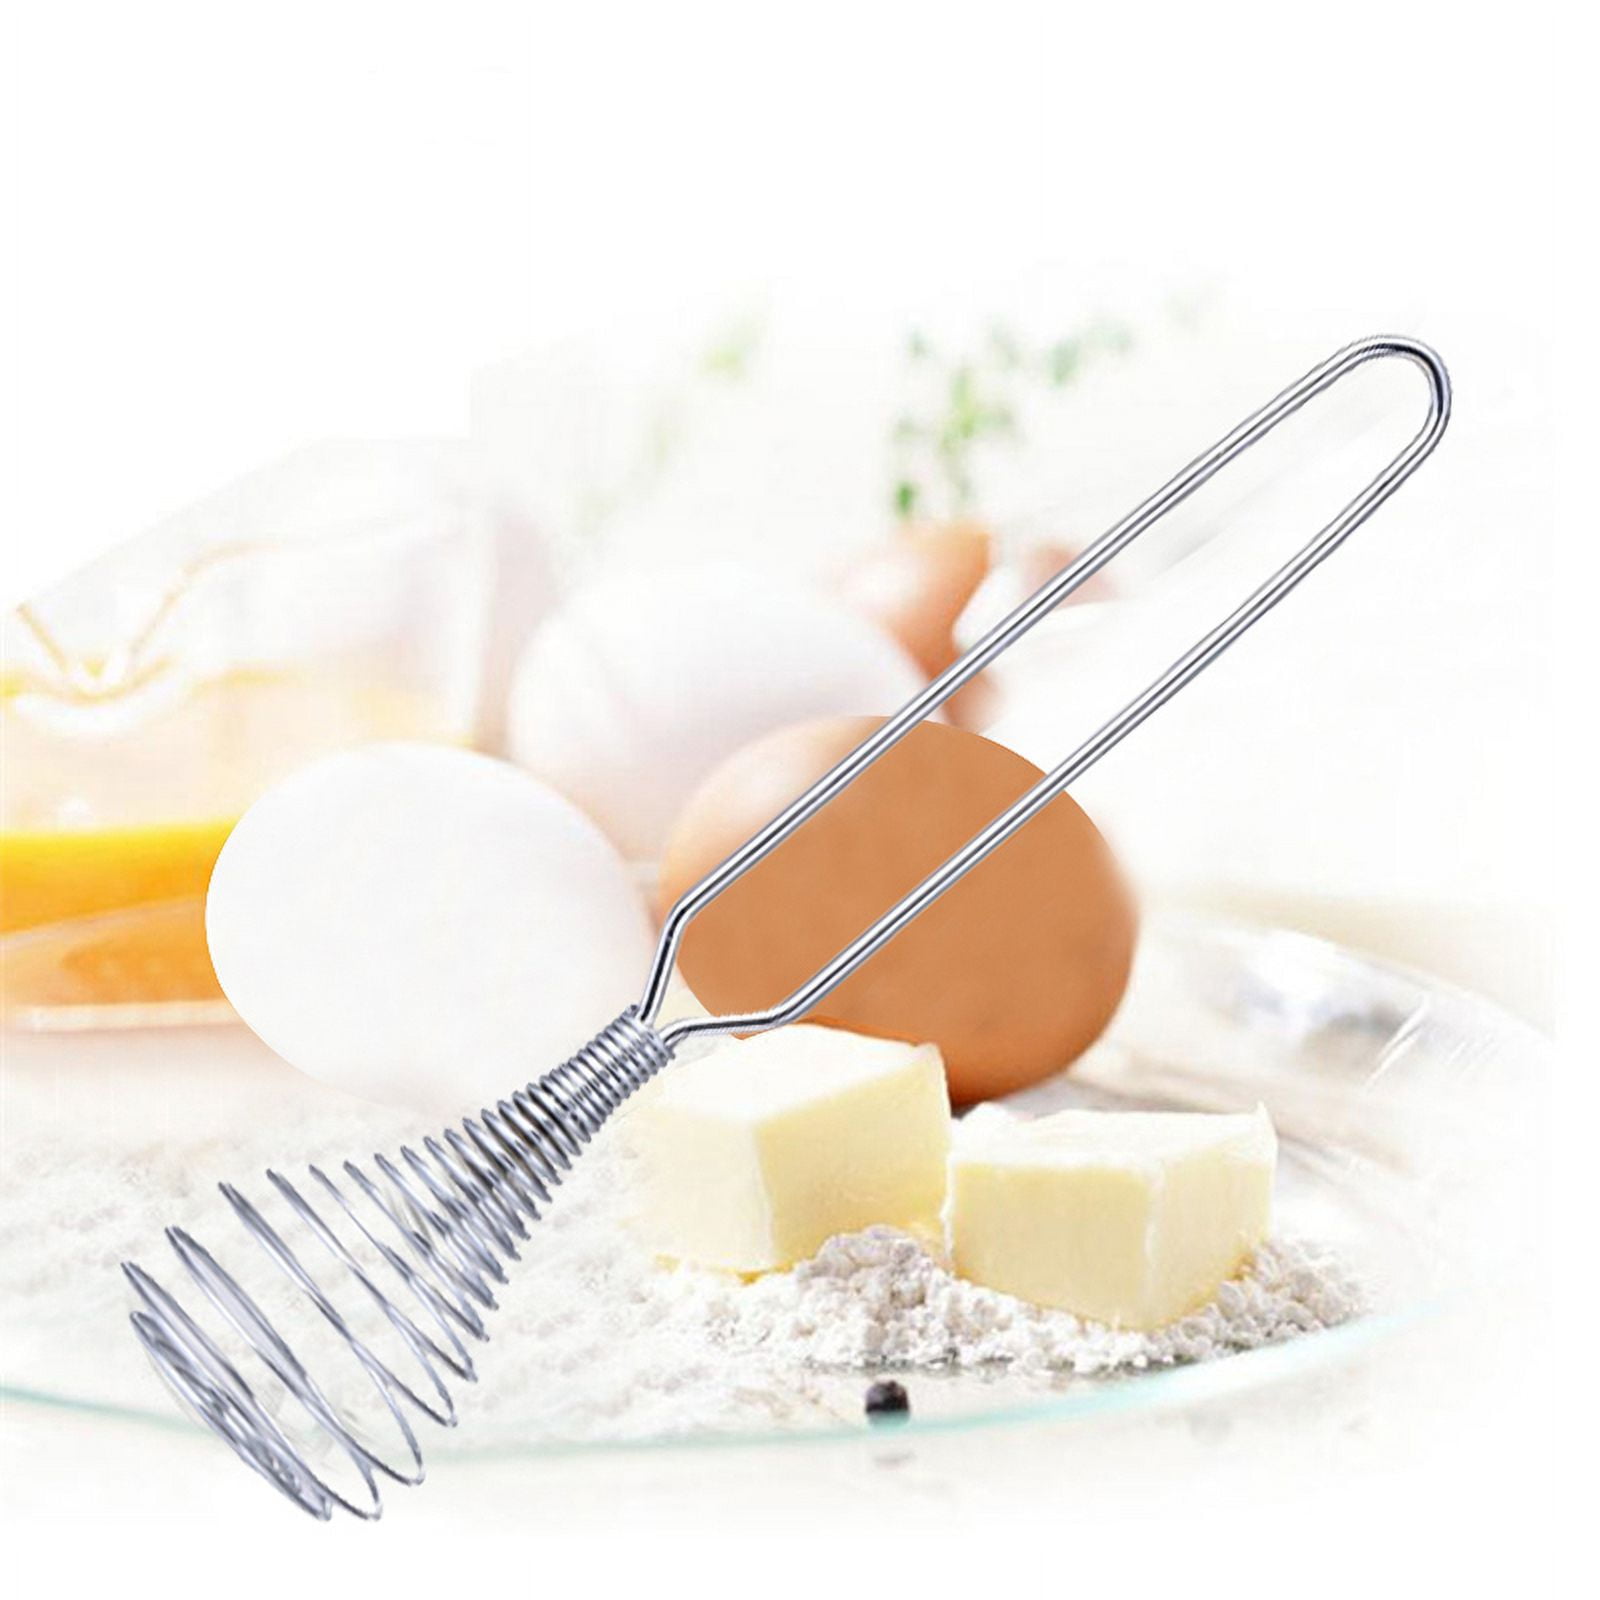 SPRING PARK Stainless Steel Egg Whisk Mixer, Hand Push Blender Stirrer,  Versatile Tool for Egg Beater, Milk Frother, Kitchen Utensil for Blending,  Whisking 